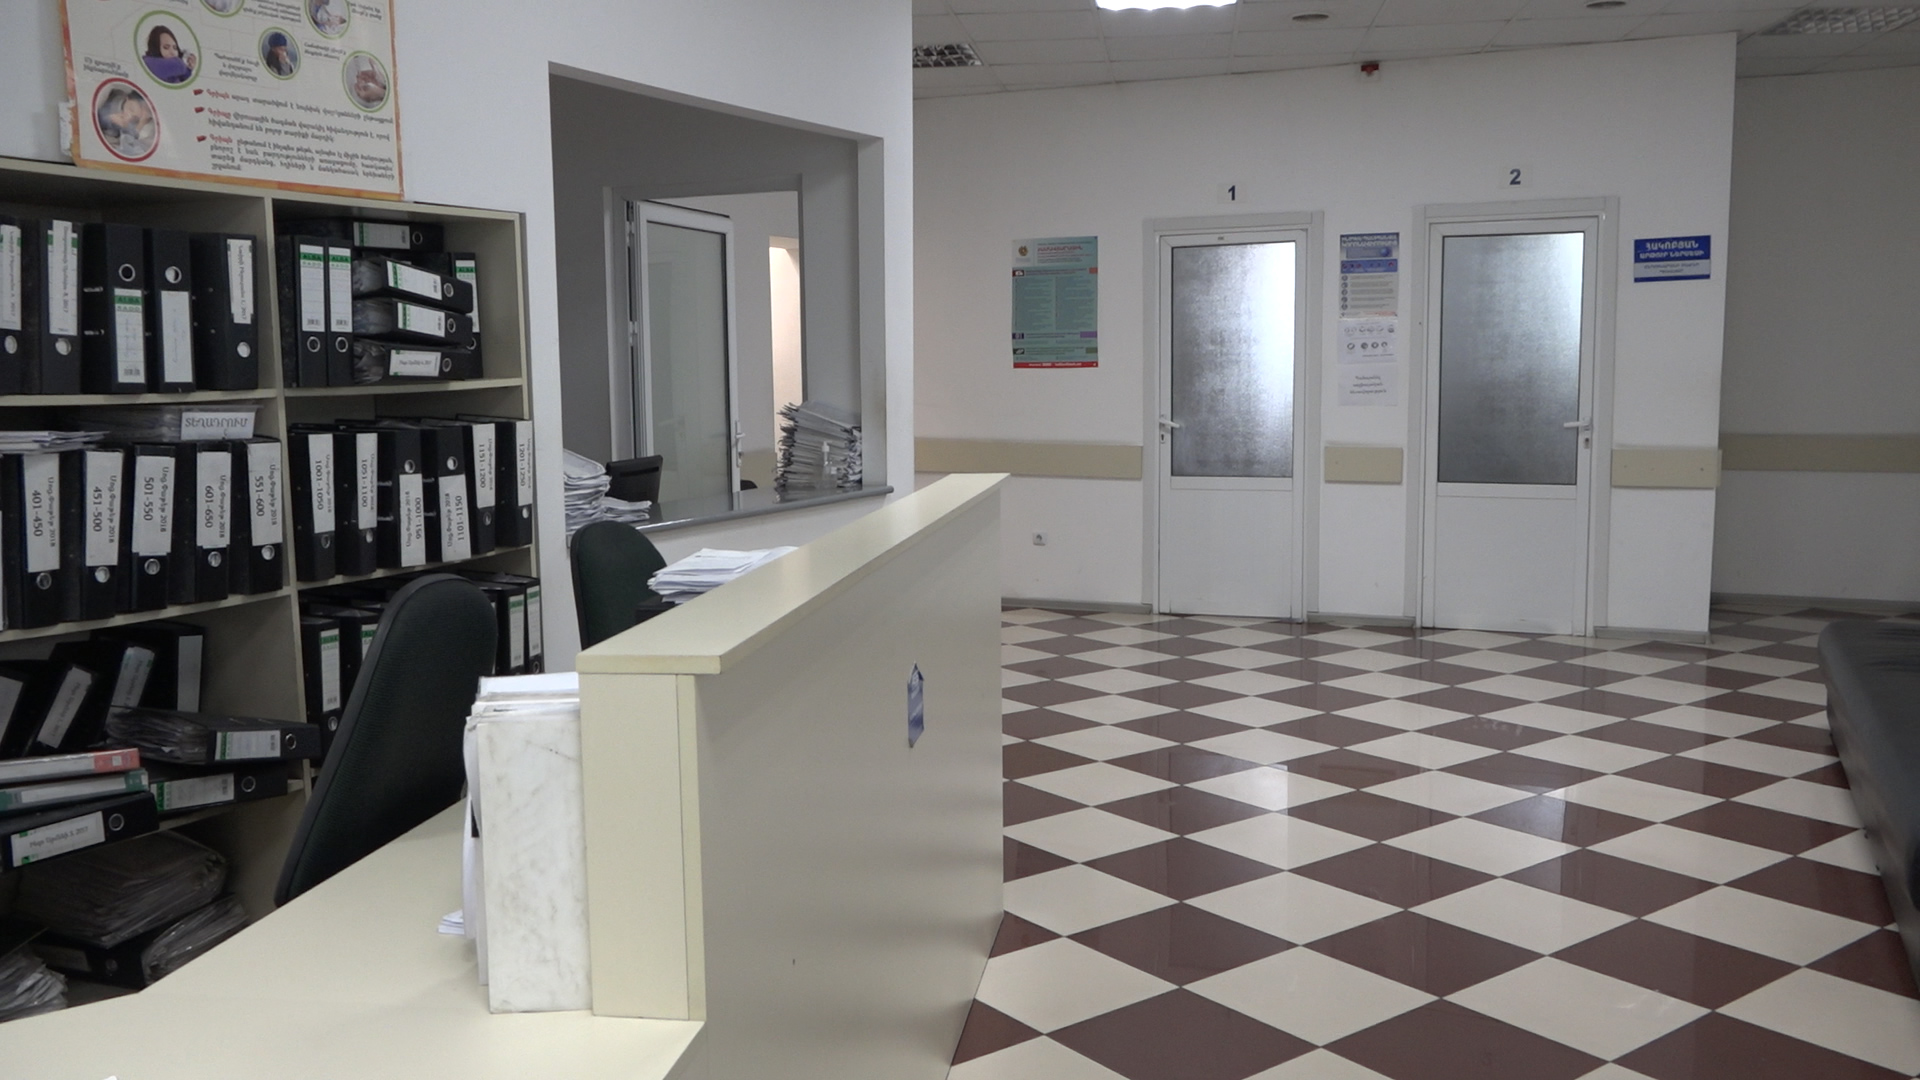 Երևանում գործող բժշկական որոշ կենտրոնների հանդեպ գործունեության կասեցման որոշումներ են կայացվել. Հայկական միասնական տեղեկատվական կենտրոն